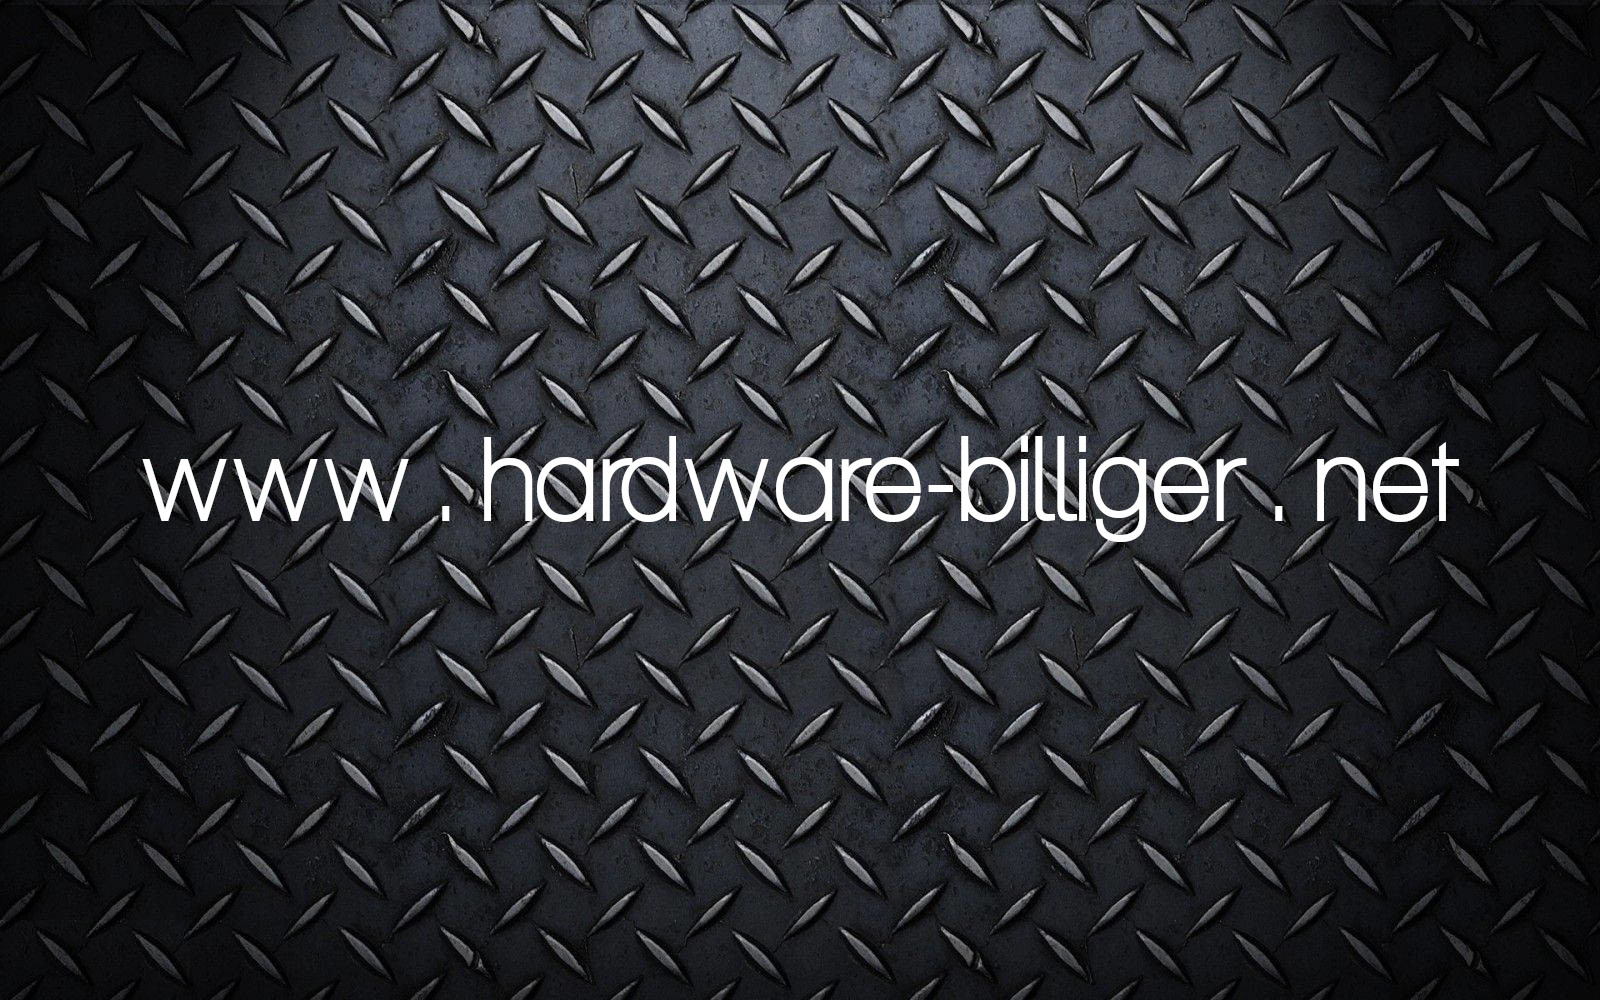 www.hardware-billiger.net